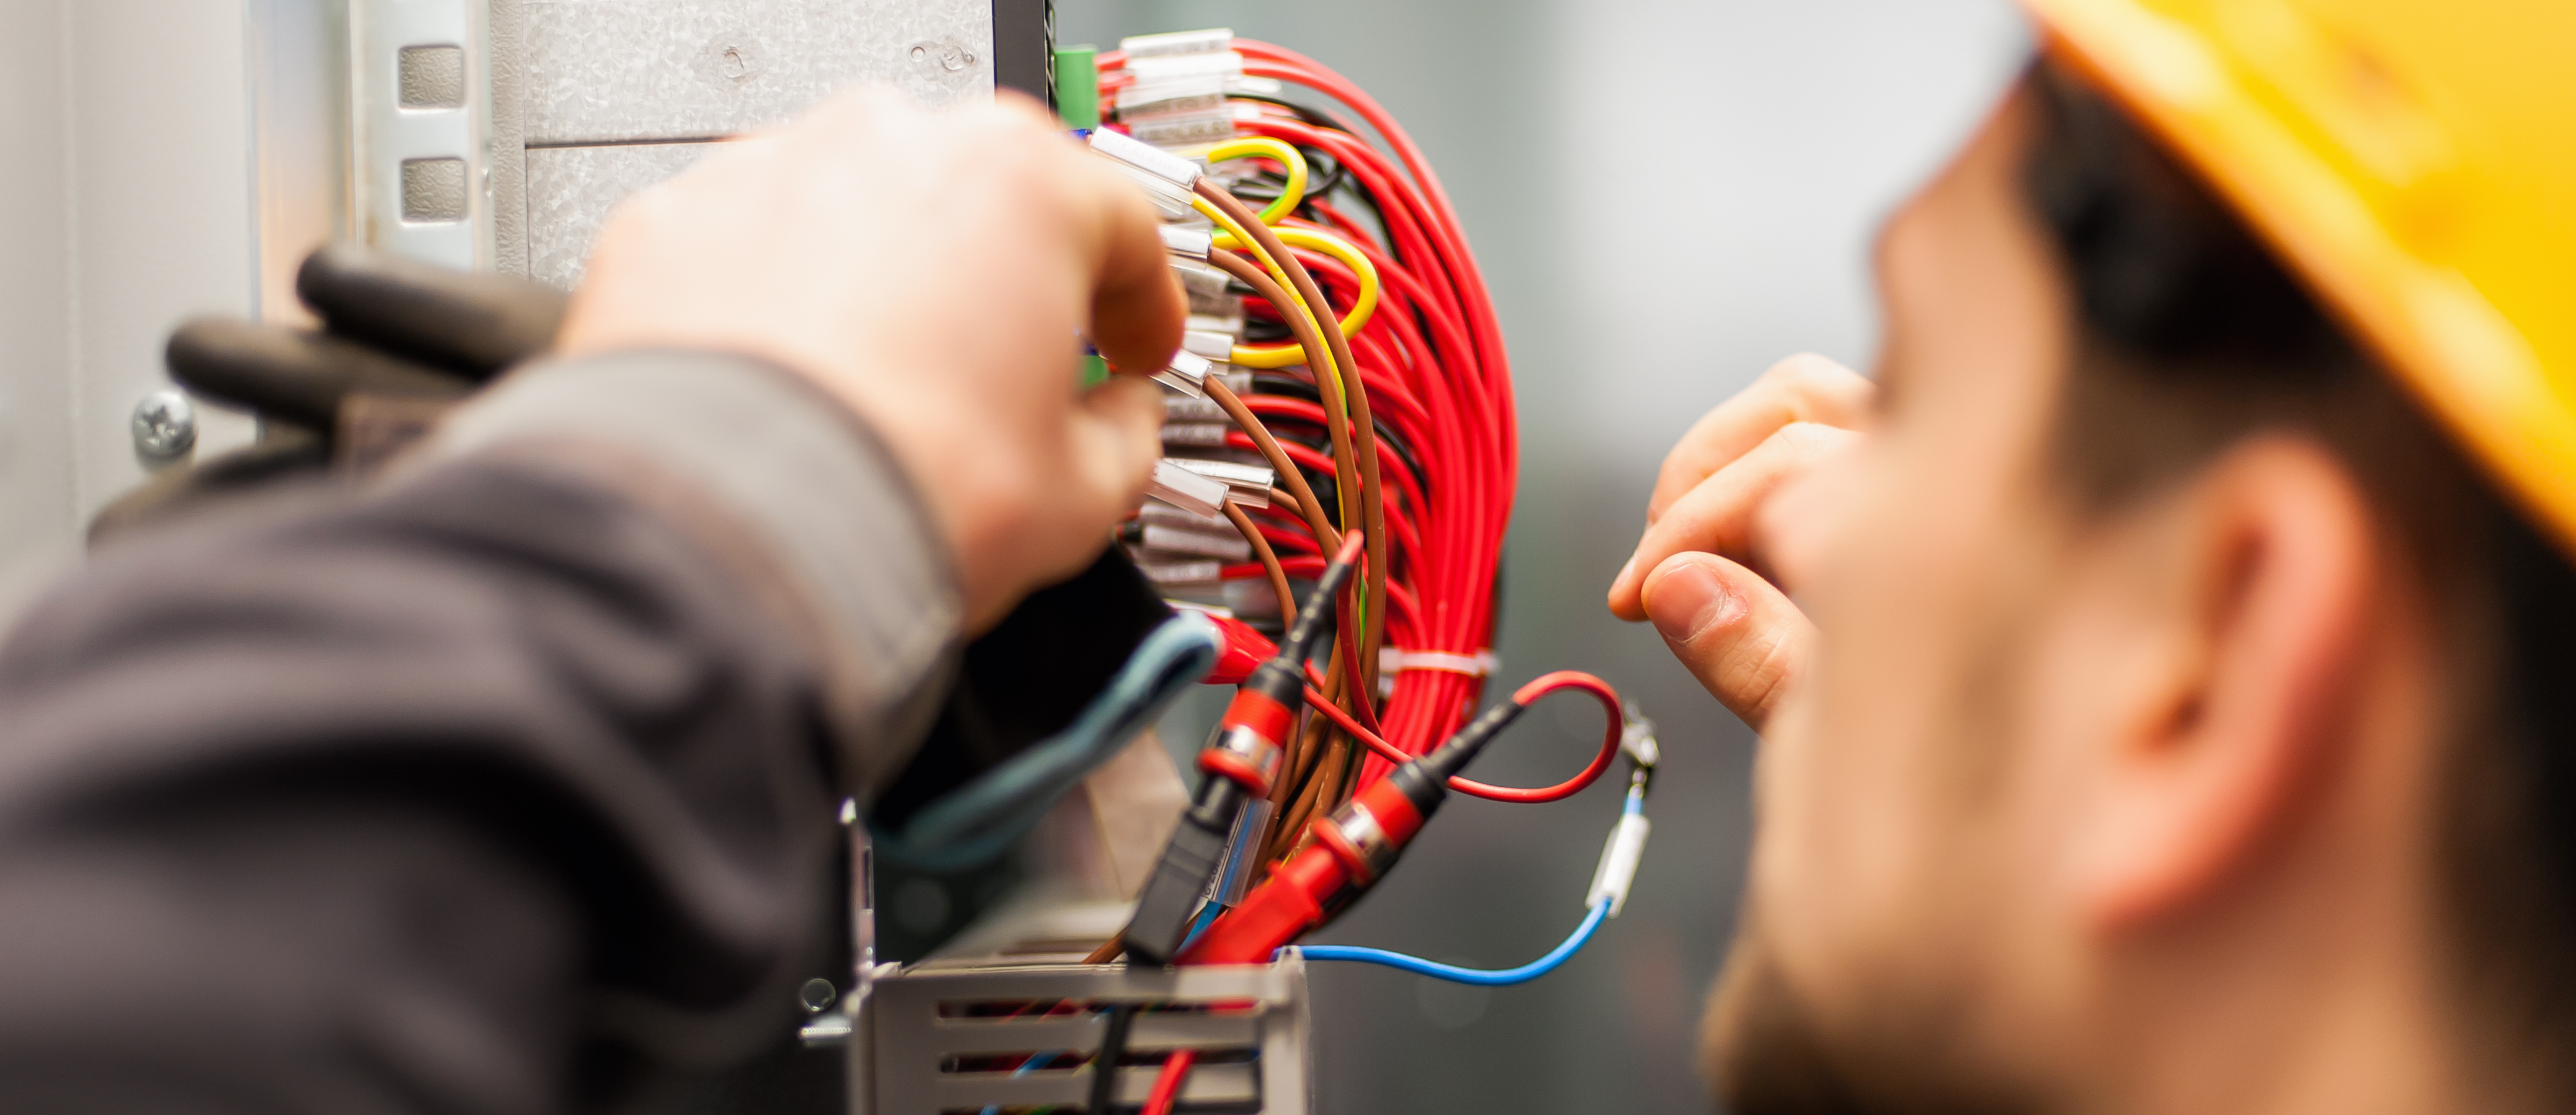 What Do Electricians Do: Job Description, Salary & Training